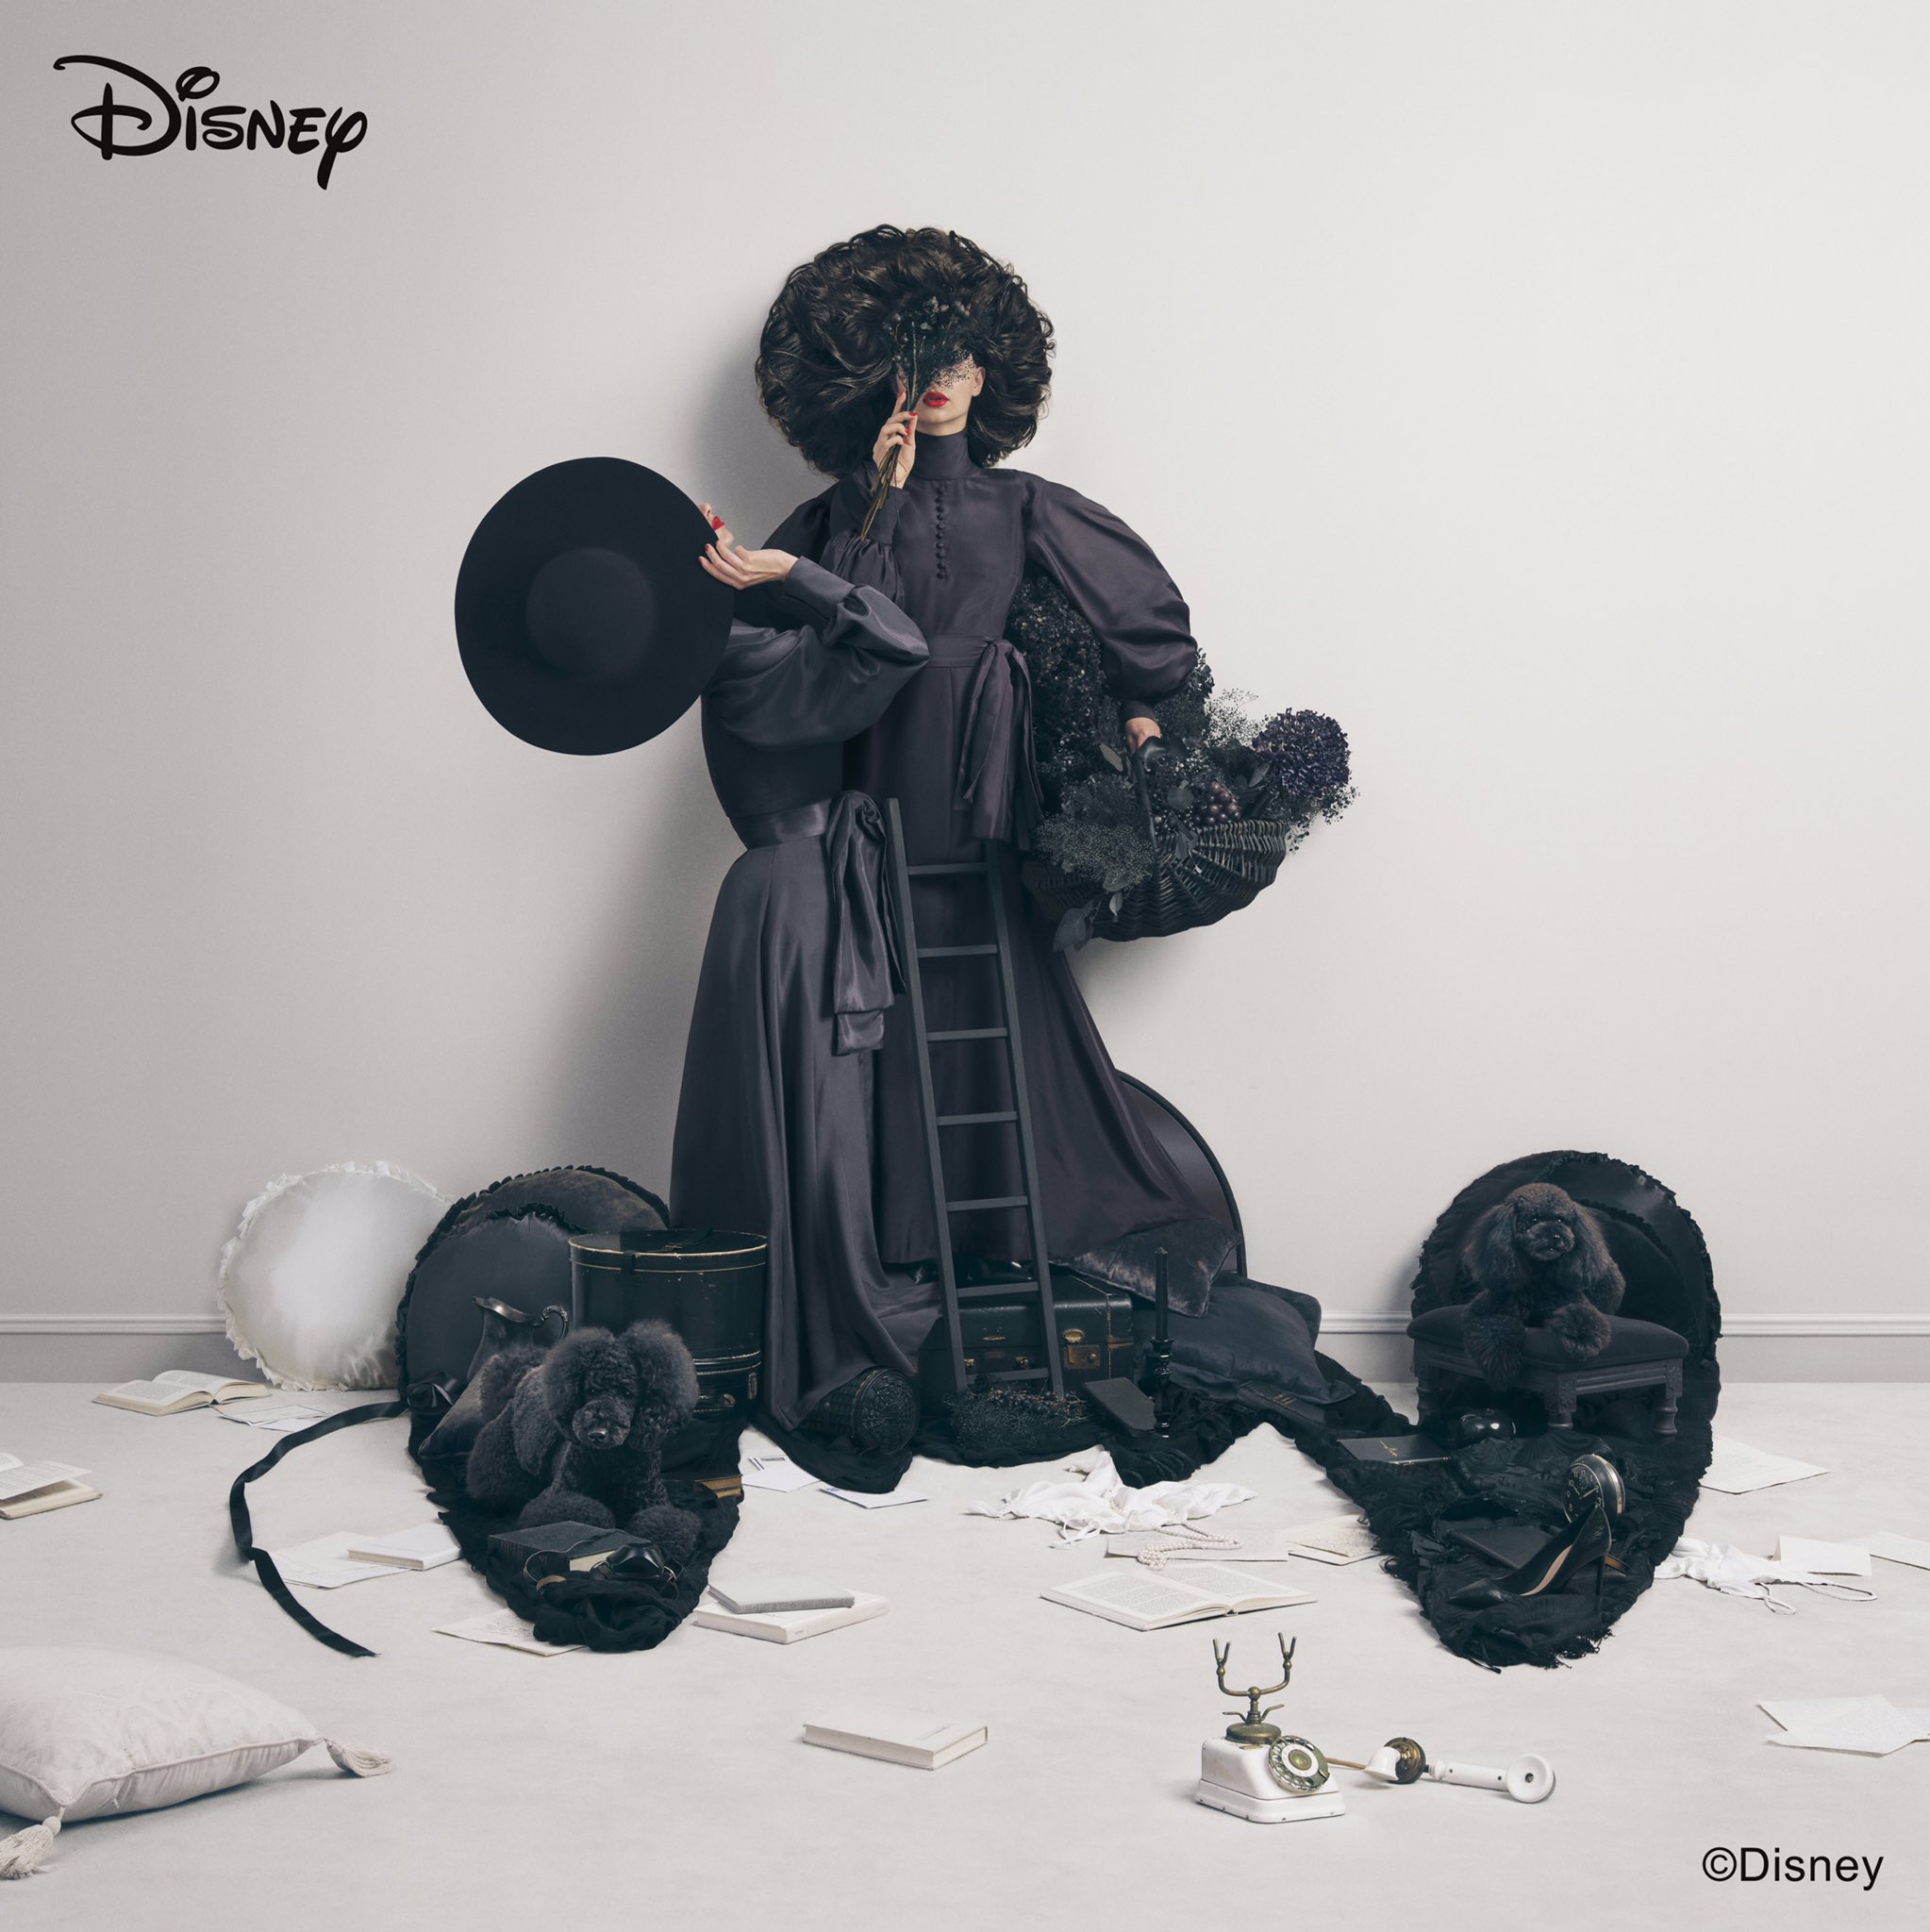 吉田ユニ Yuni Yoshida Disney Mickey Mouse Amp Minnie Mouse Art By Yuni Yoshida ユニクロの Ut からwomensとkidsの展開 ５月上旬よりユニクロの店舗および公式オンラインストアにて販売予定です 他のデザインもありますhttps T Co 0jfam372dz